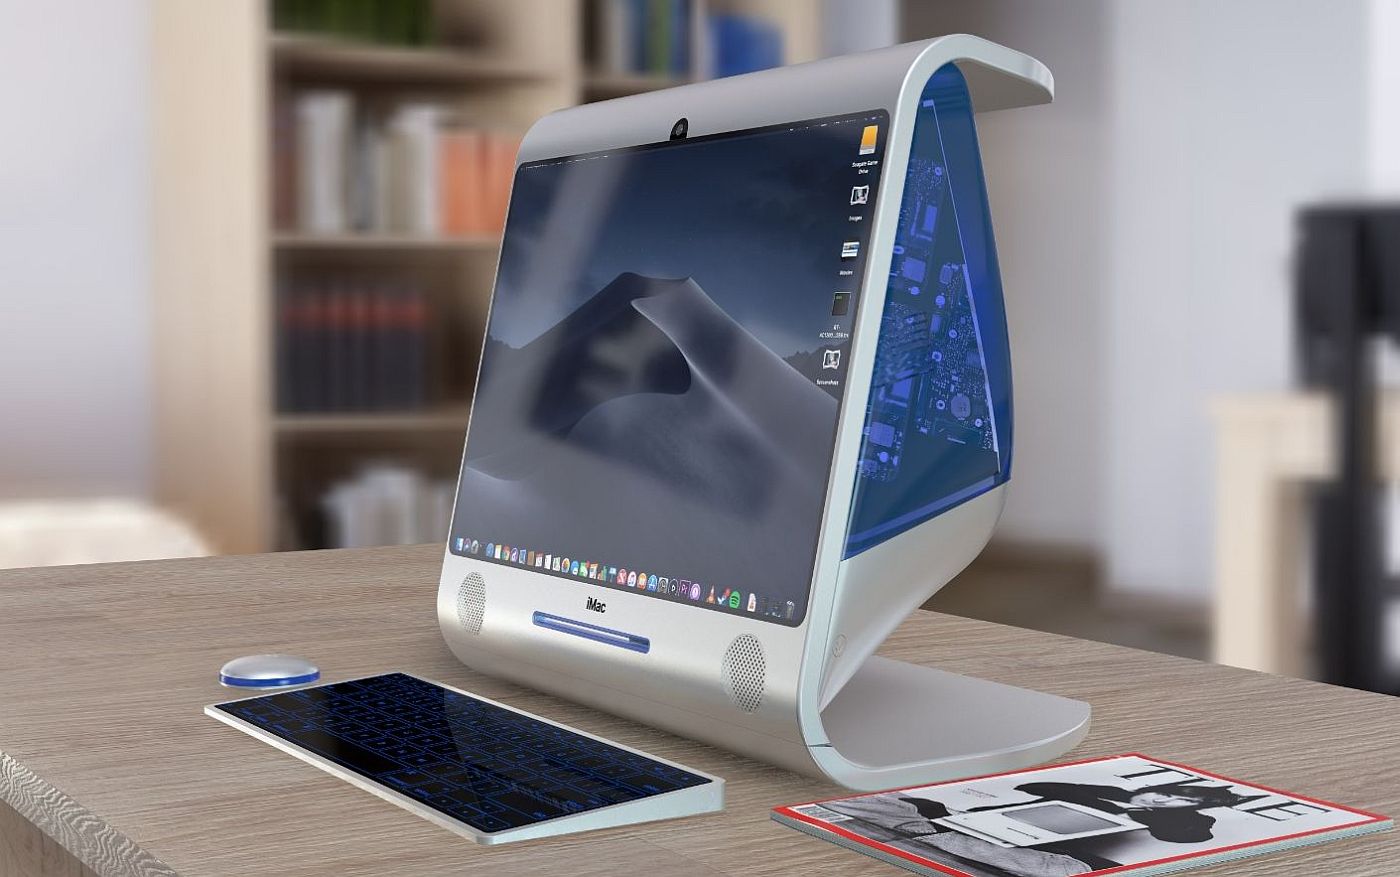 Apple iMac G3 được thiết kế lại bởi nhà thiết kế Antonio de Rosa - Ảnh 2